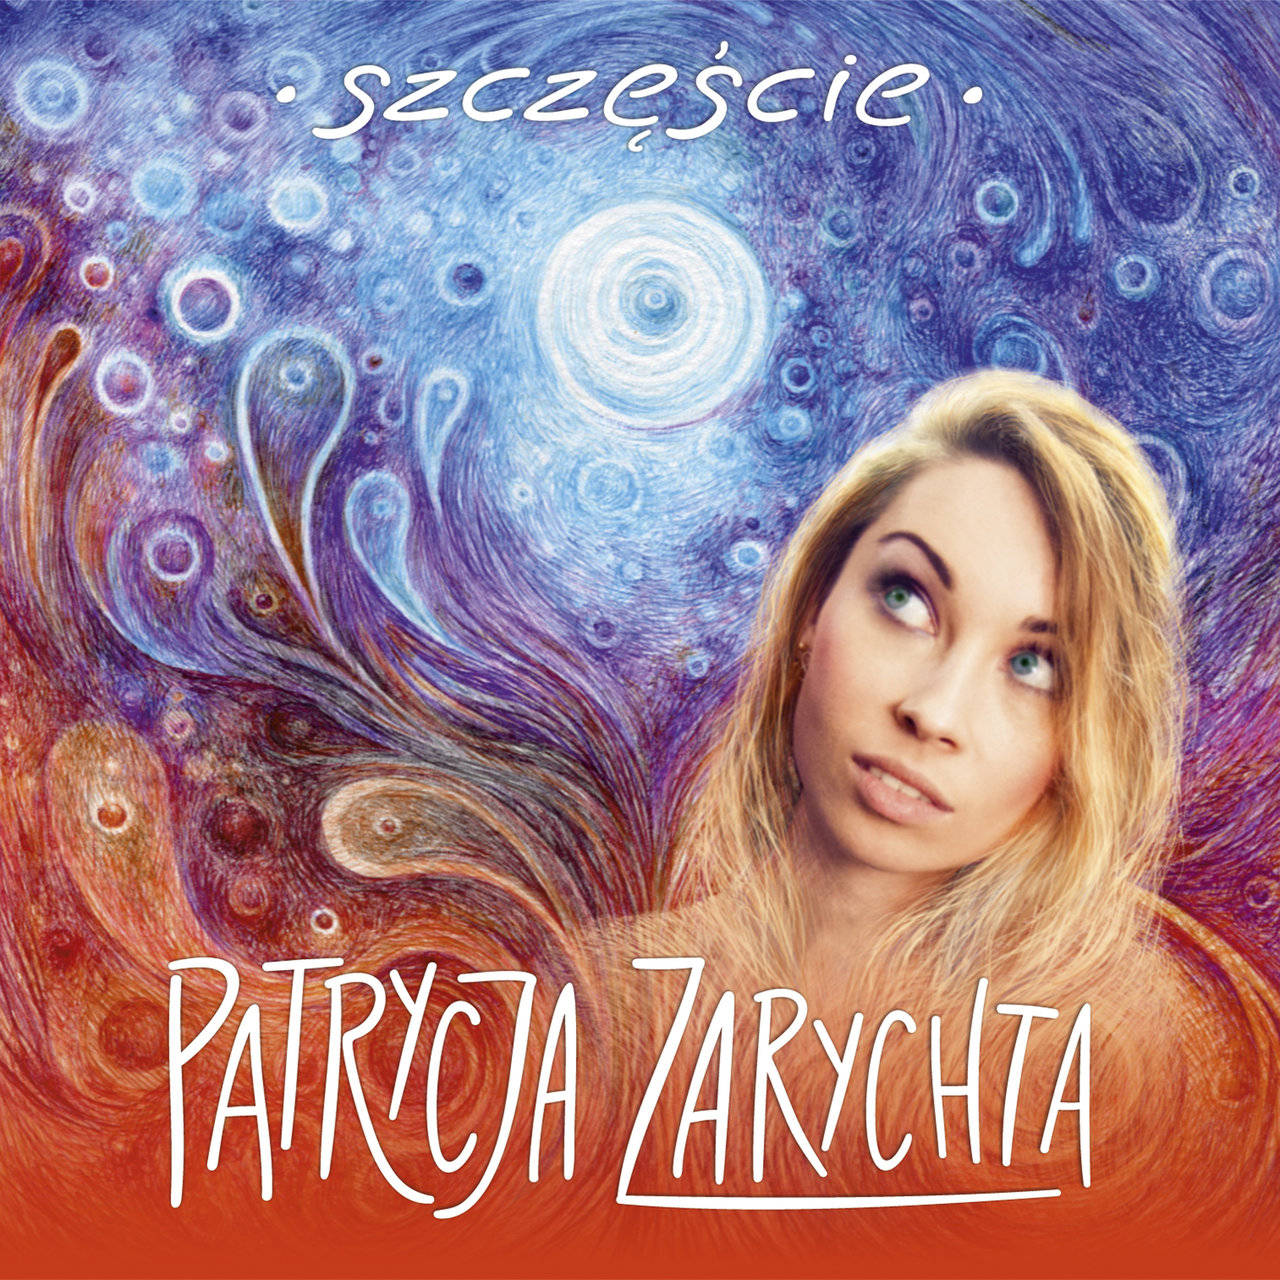 Patrycja Zarychta - [2017] Szczęście
(Polskie Radio)